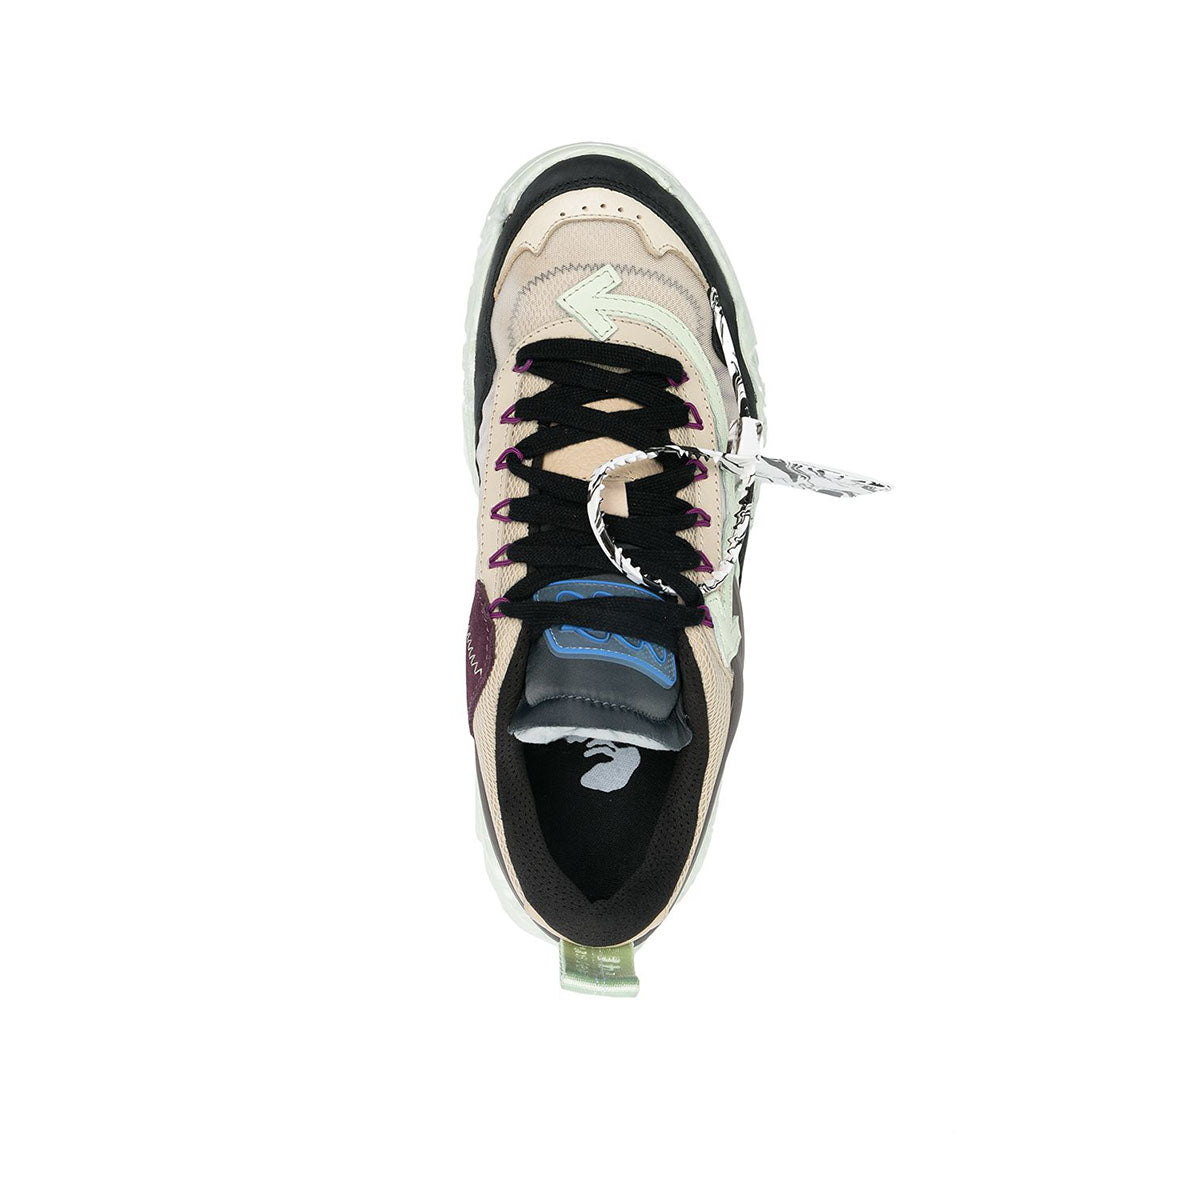 Odsy-1000 sneaker black/mint